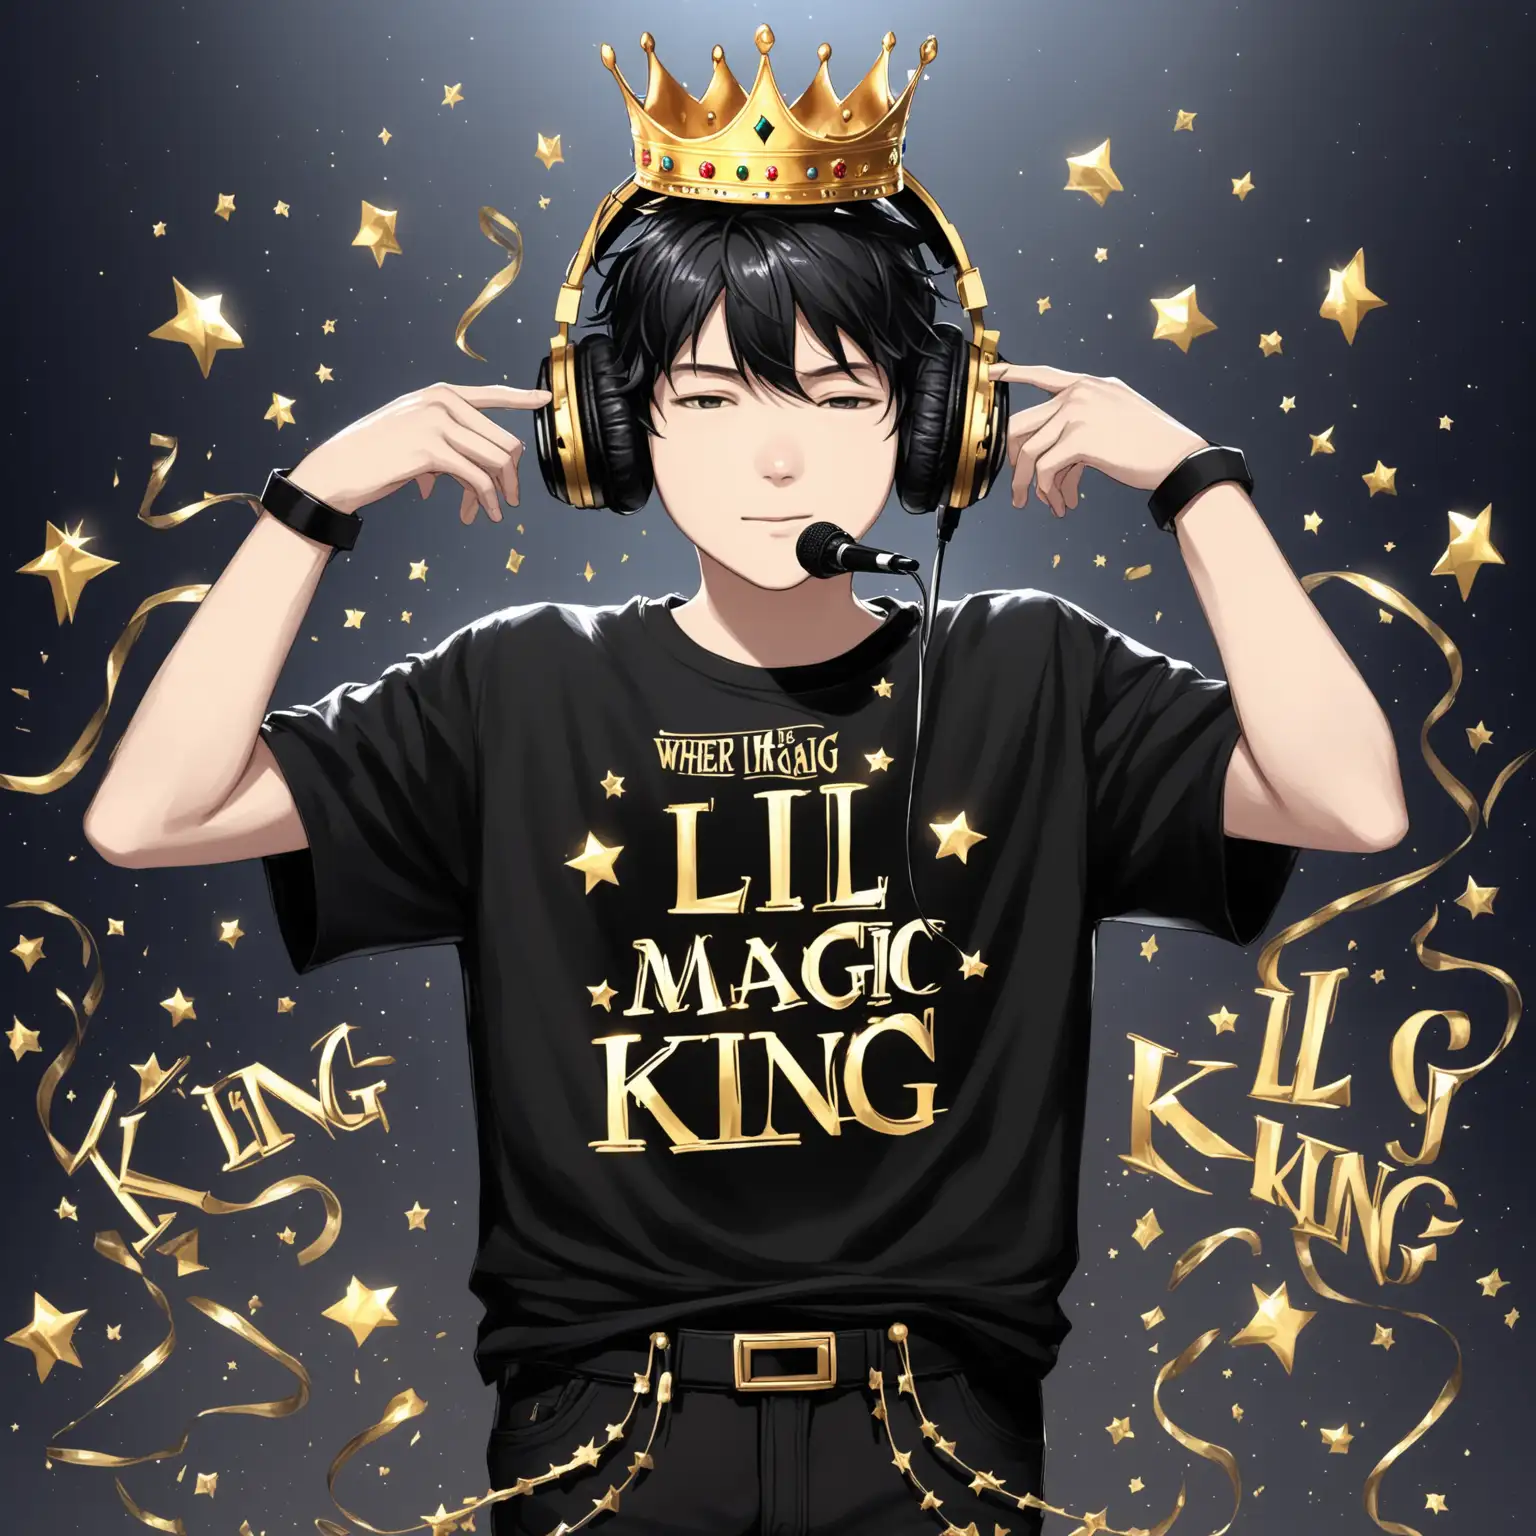 Streamer de chico completo, camiseta negra donde tiene escrito "Lil Magic Rey" una corona dorada, pantalones negros, cascos negros, micrófono negro